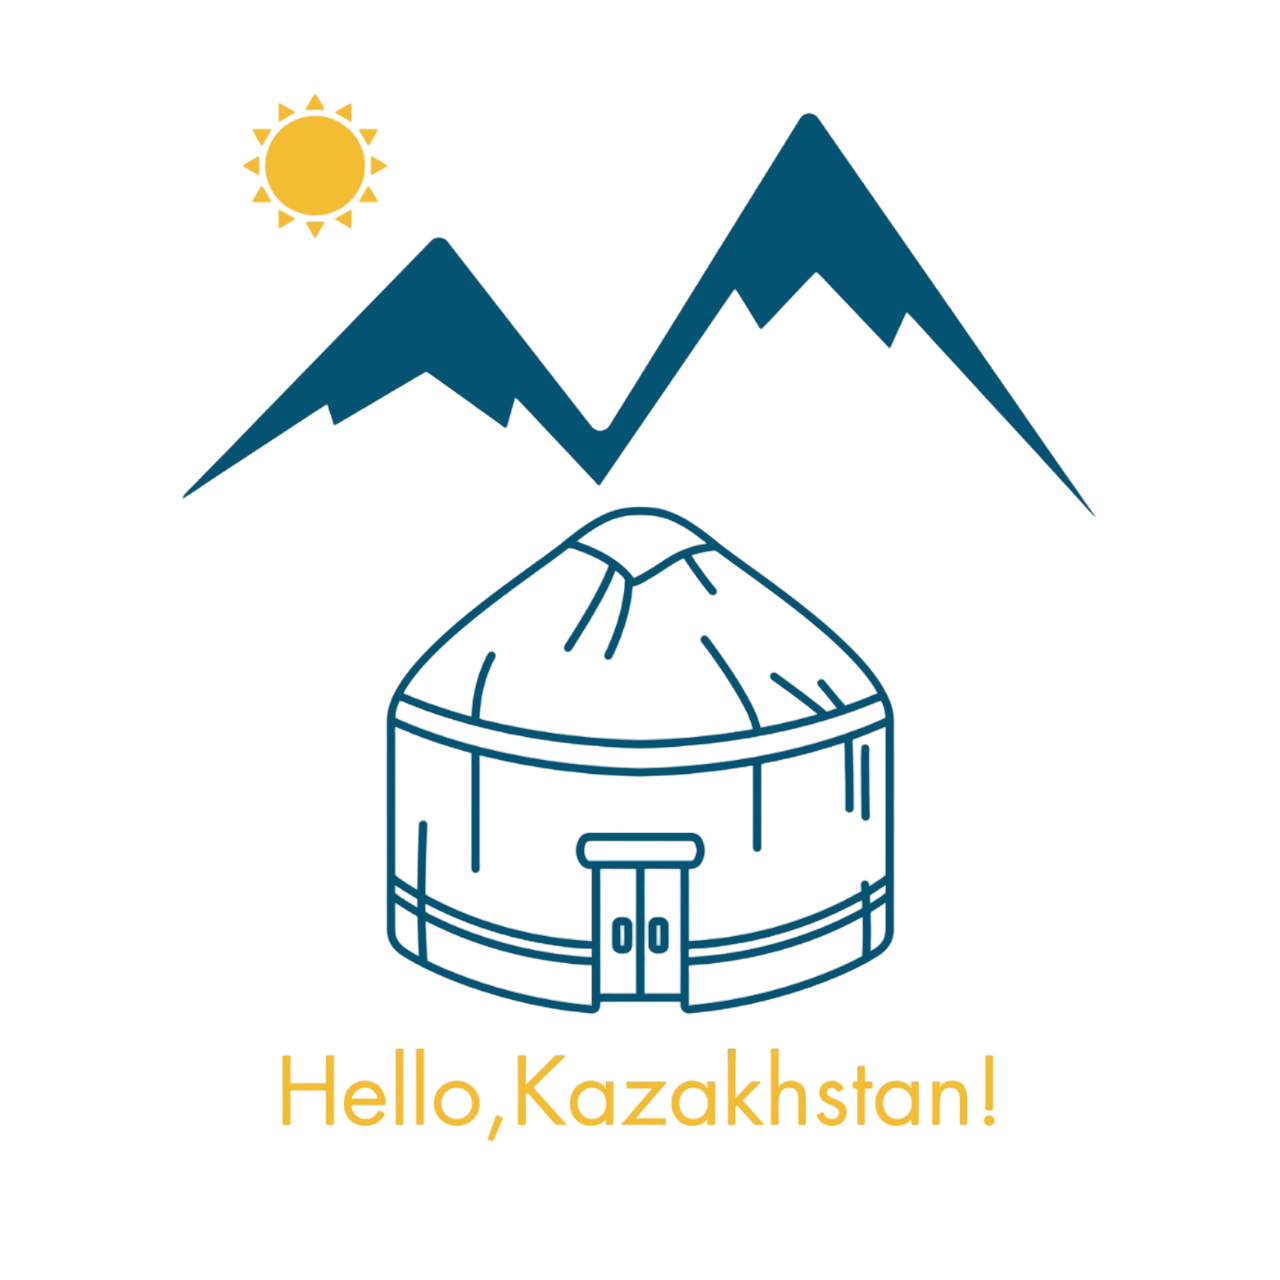 Hello, Kazakhstan!